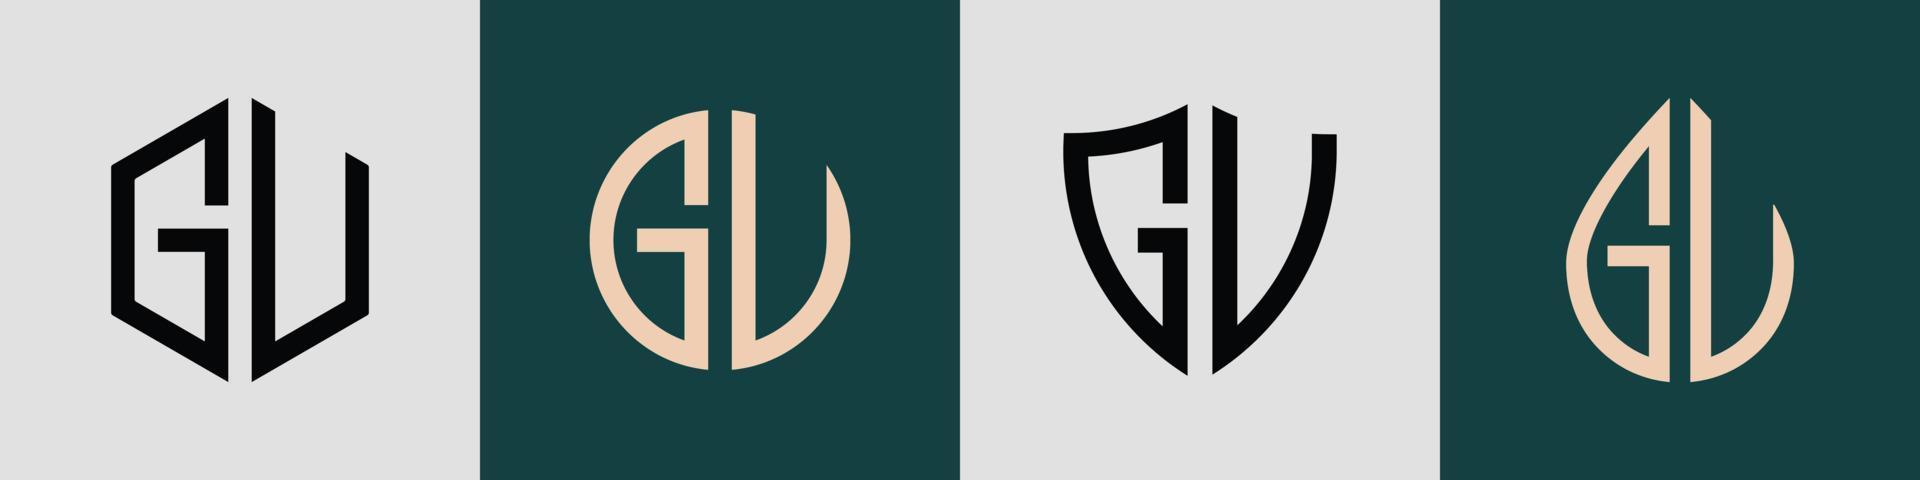 kreativ einfach Initiale Briefe gu Logo Designs bündeln. vektor